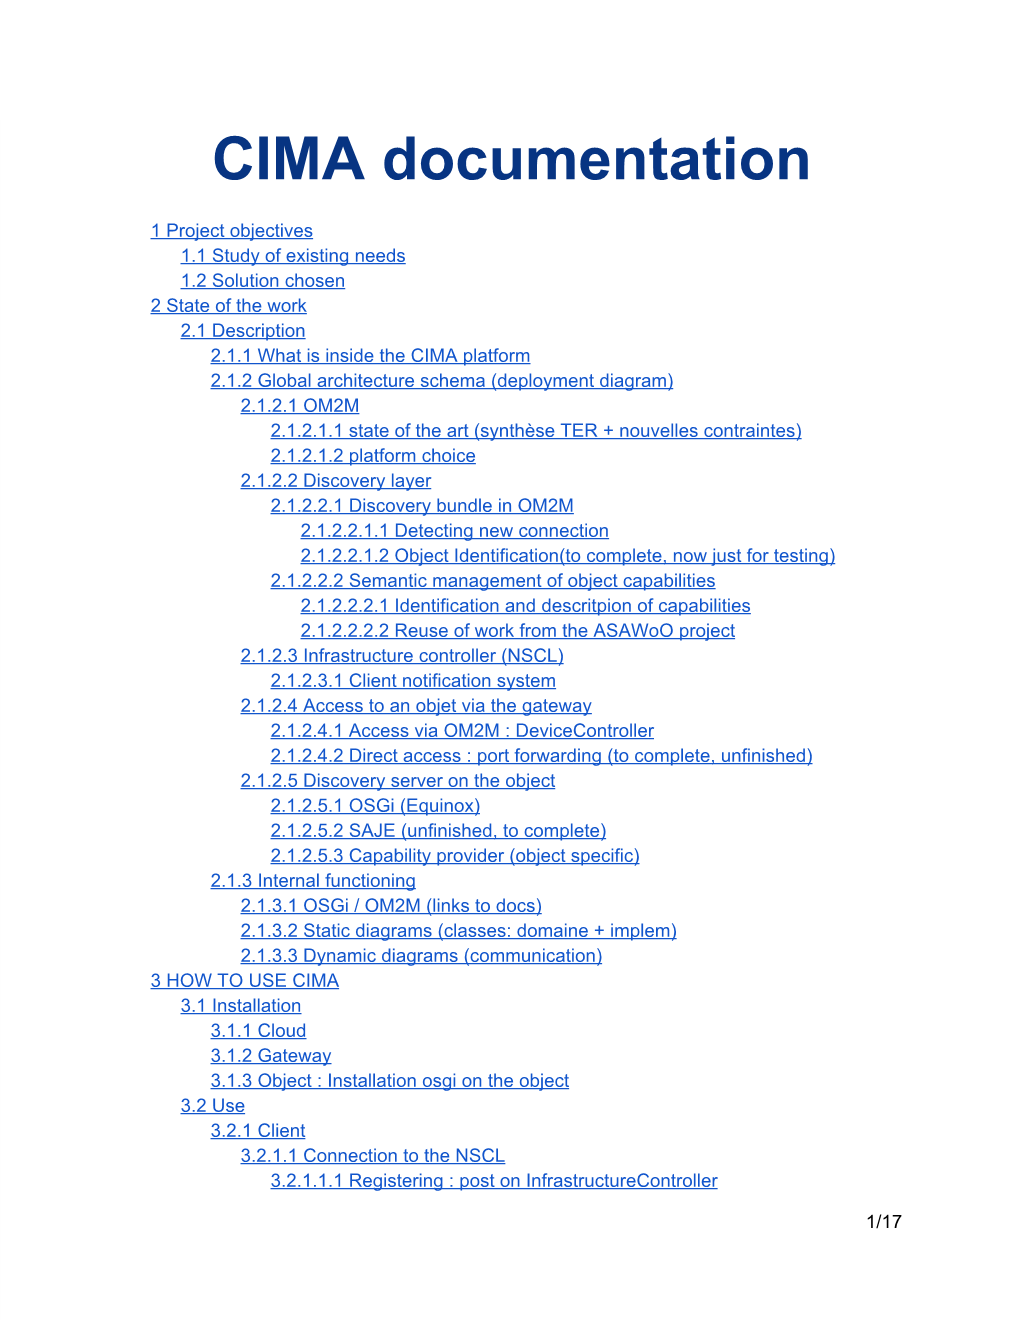 CIMA Documentation